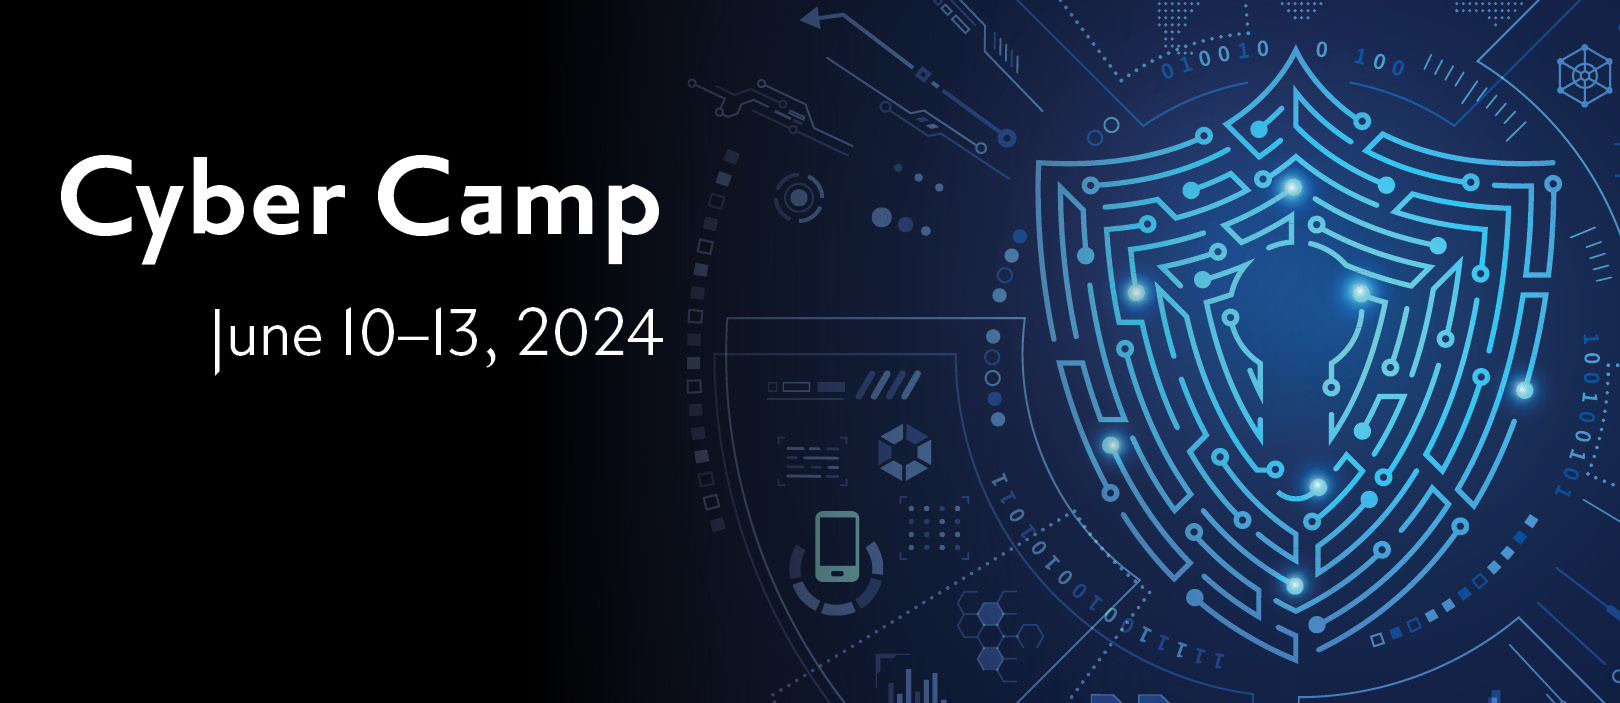 Cyber Camp Cyber Camp 2024.jpg